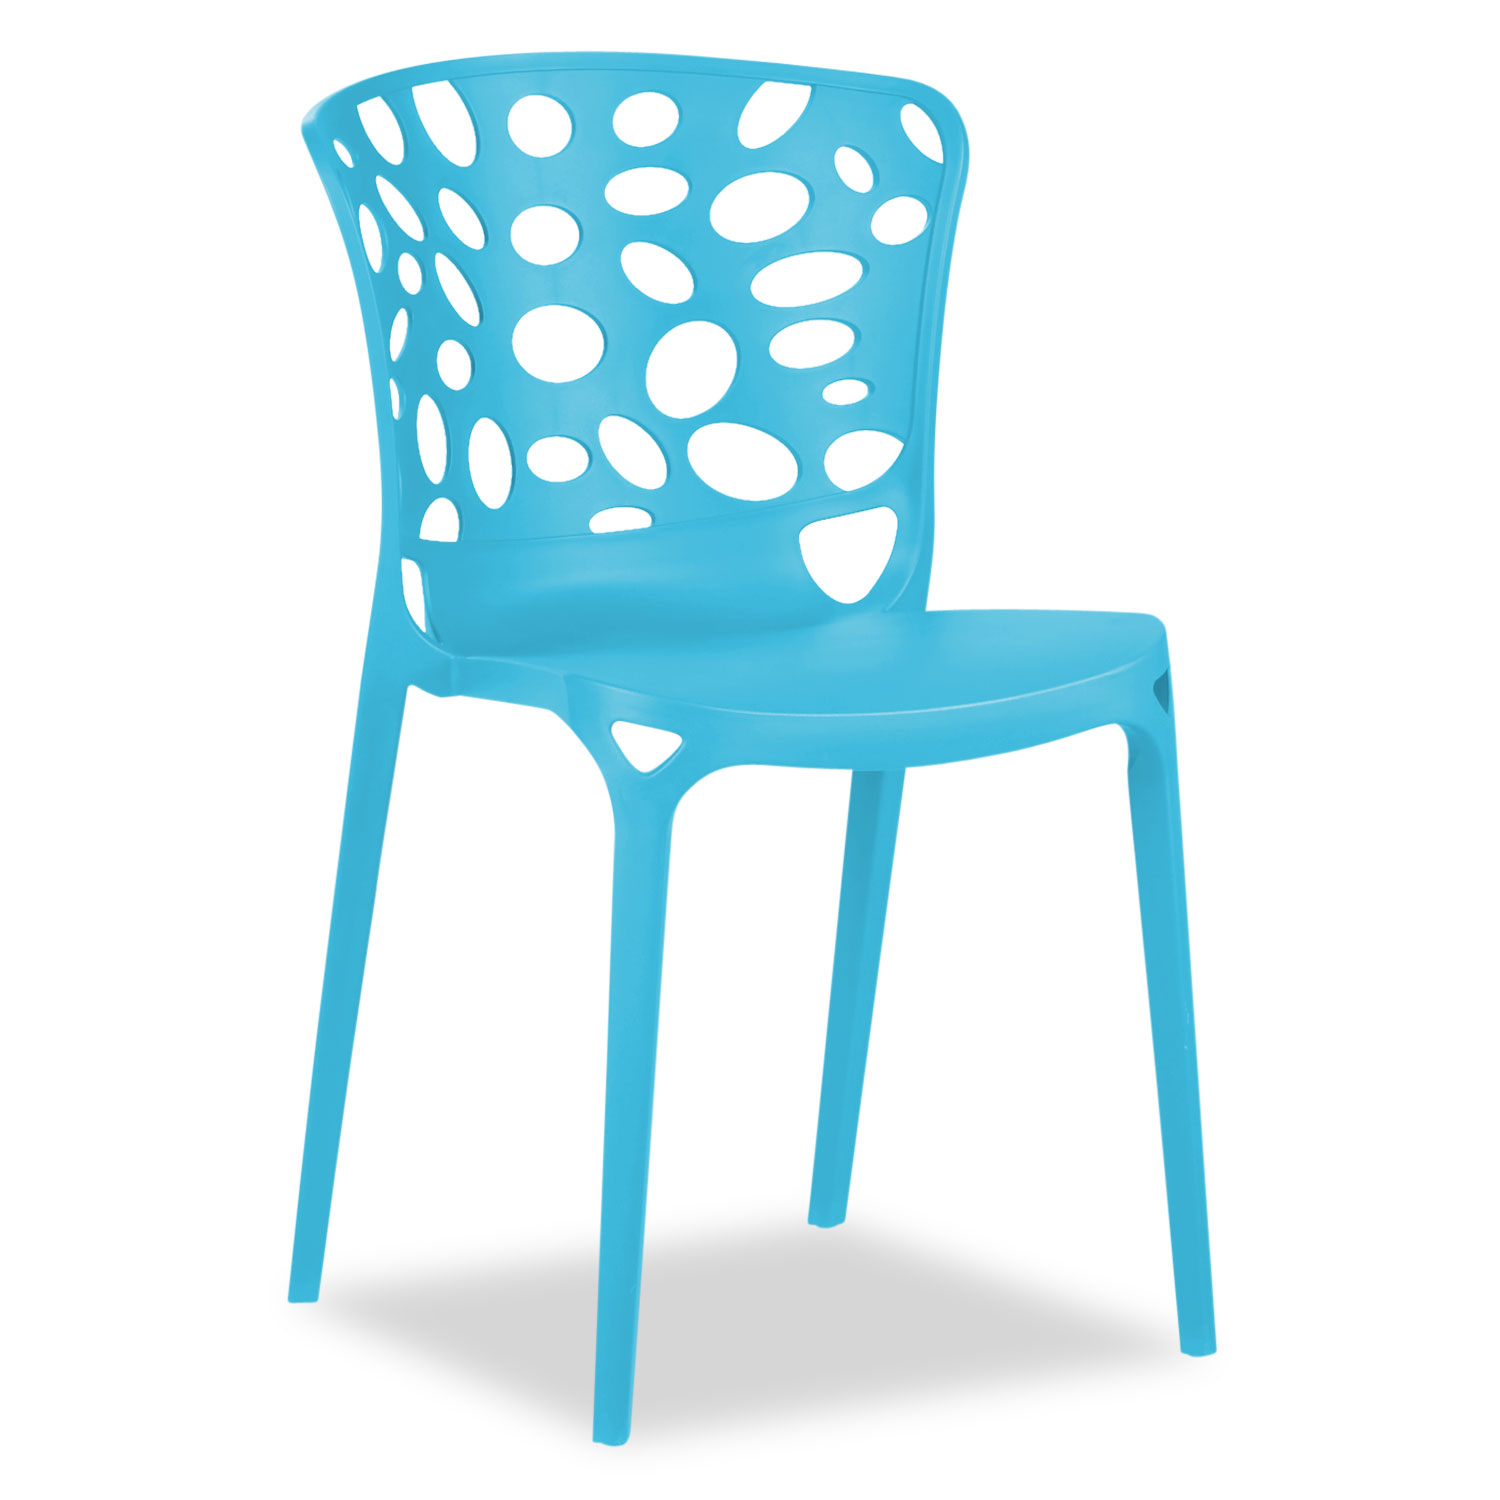 Chaise de jardin Lot de 6 Moderne Bleu Chaises design Plastique Chaises exterieur Chaises empilable Chaise de cuisine